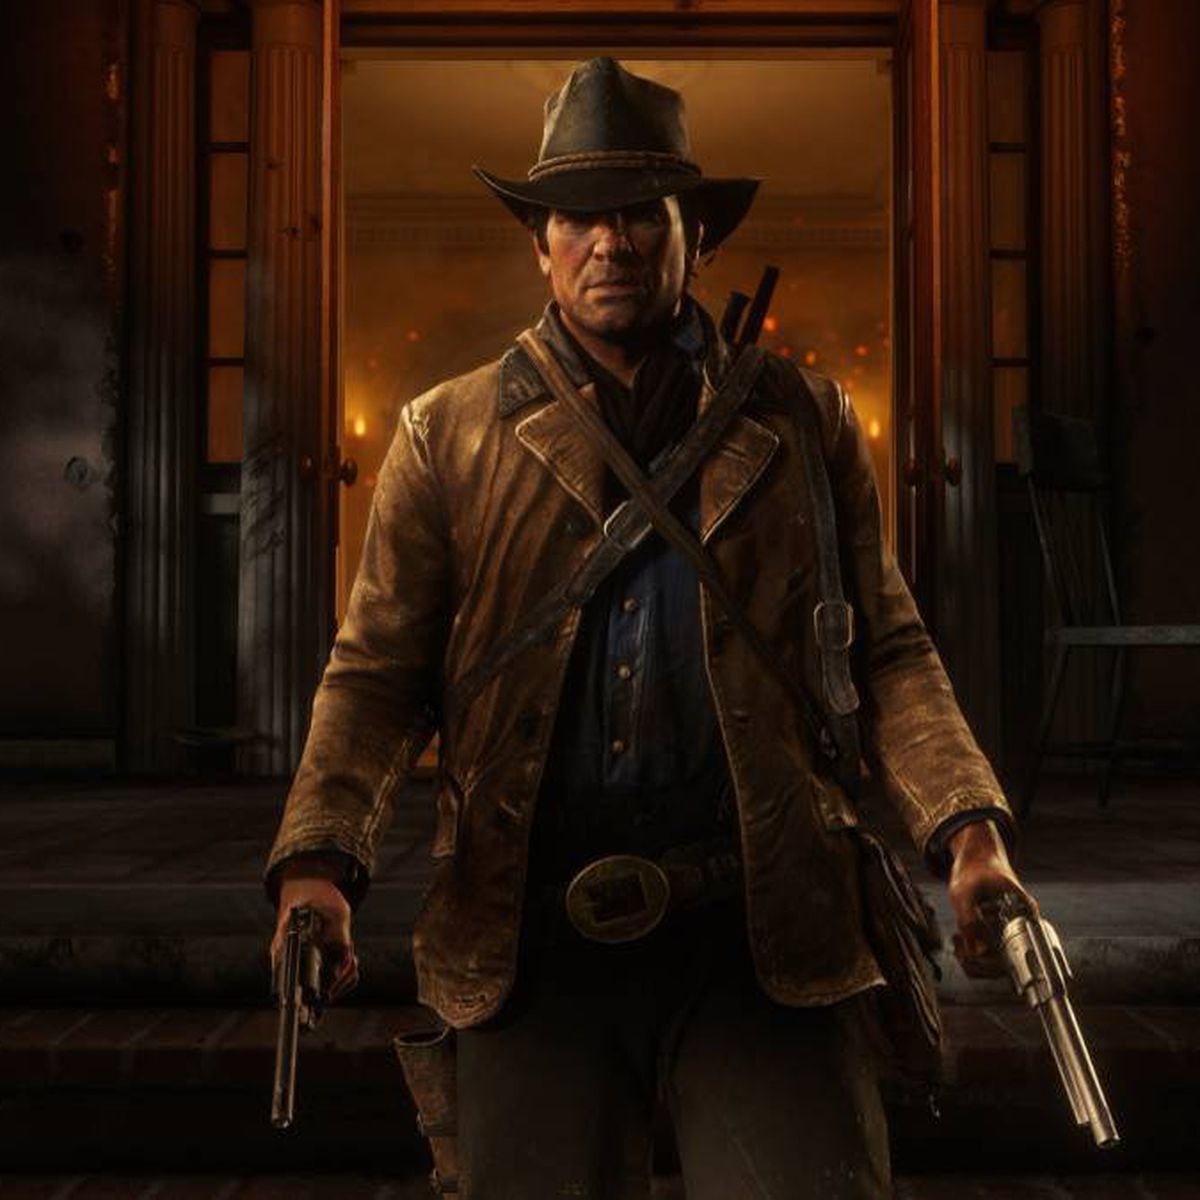 Red Dead Redemption 2 en PC: requisitos mínimos y recomendados